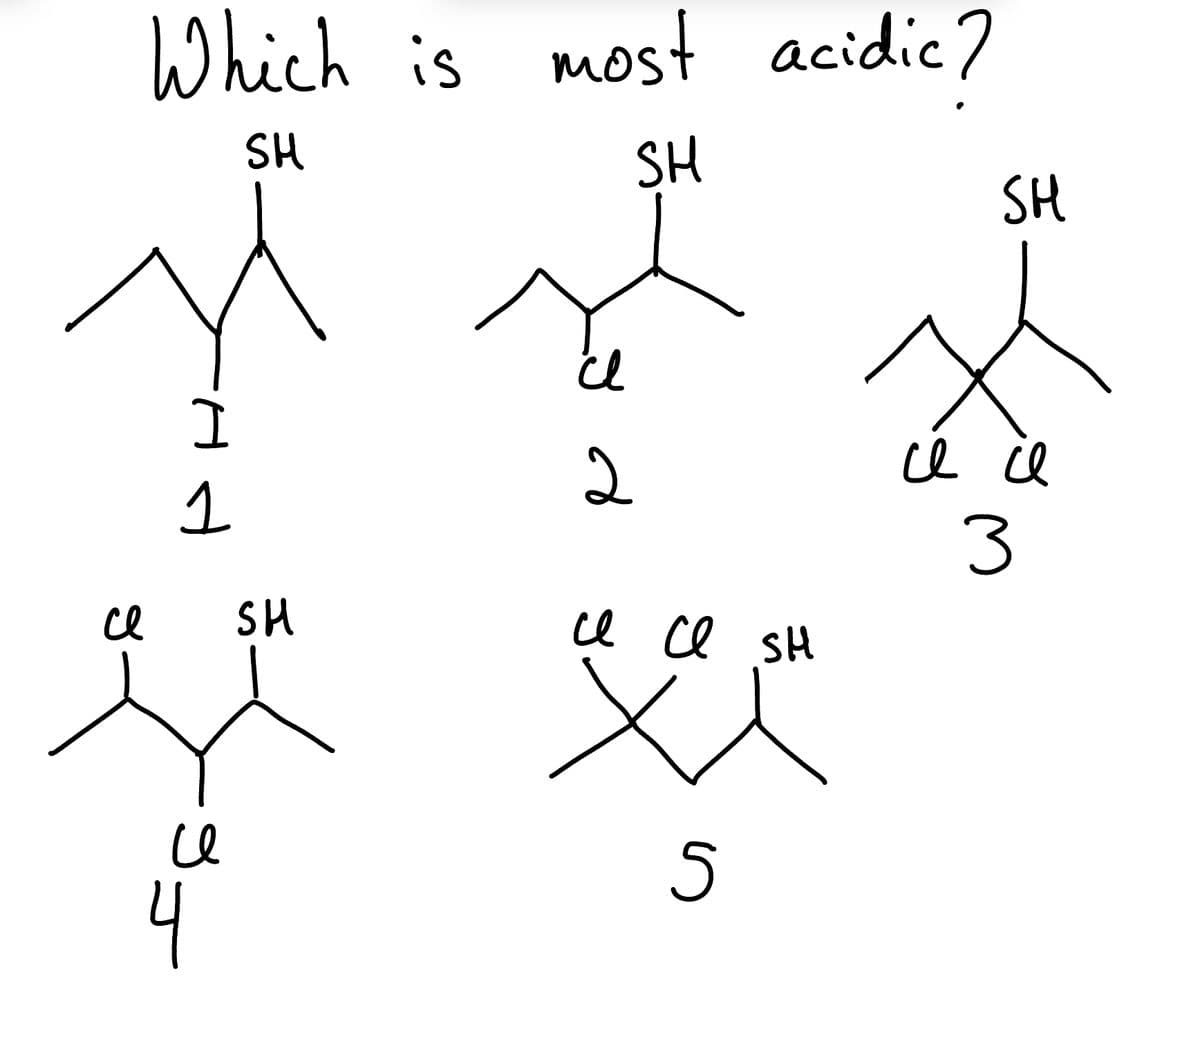 се
Which is most acidic?
SH
SH
I
1
се
4
SH
cl
2
се се SH
x
5
SH
се се
3